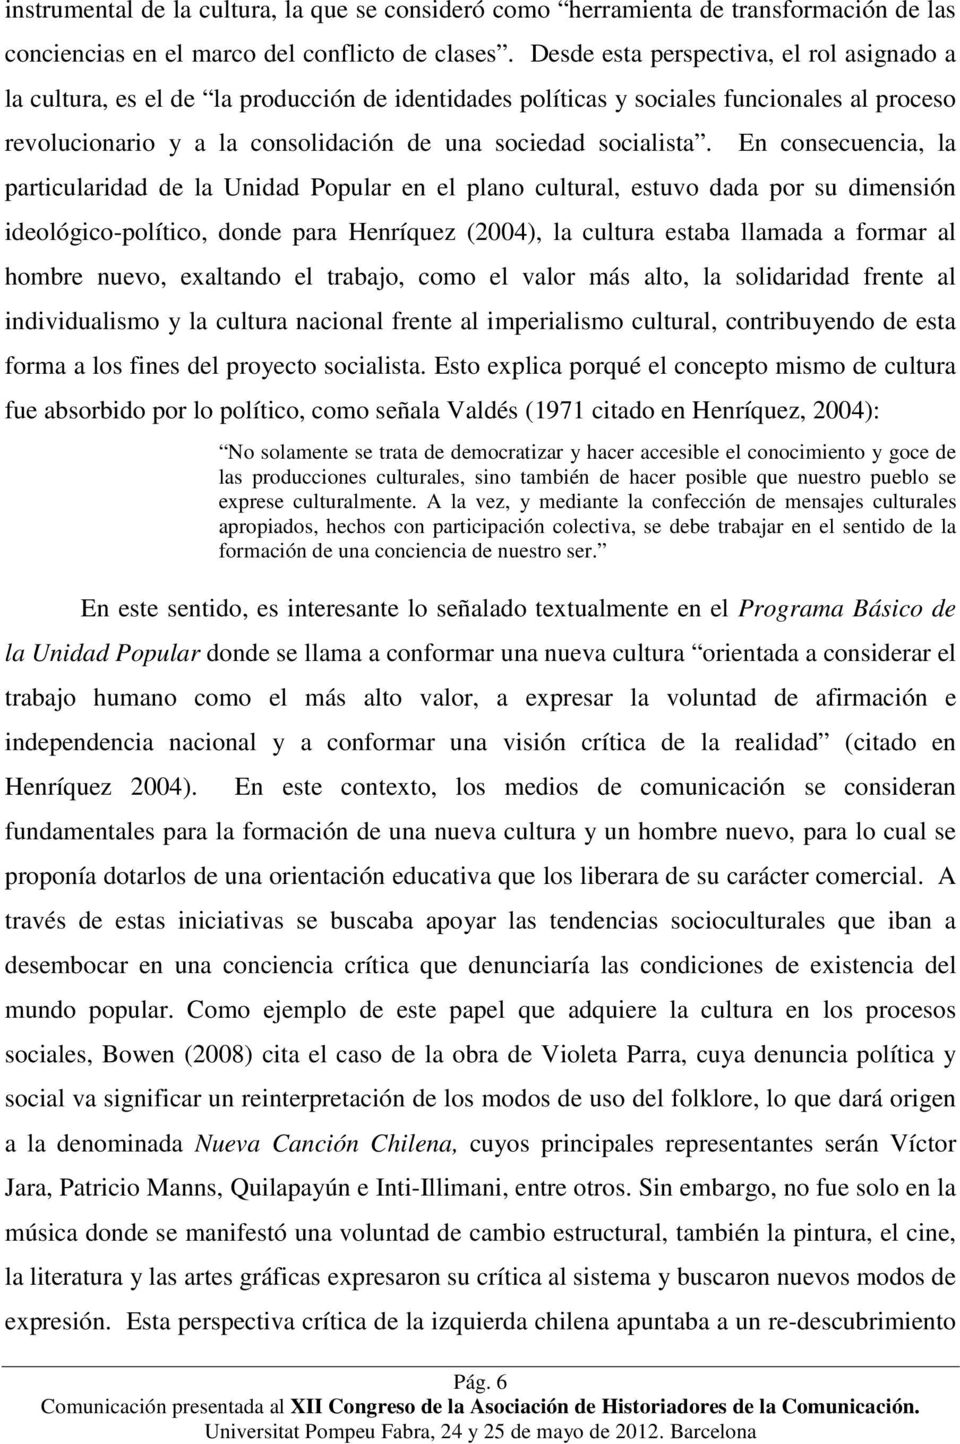 En consecuencia, la particularidad de la Unidad Popular en el plano cultural, estuvo dada por su dimensión ideológico-político, donde para Henríquez (2004), la cultura estaba llamada a formar al